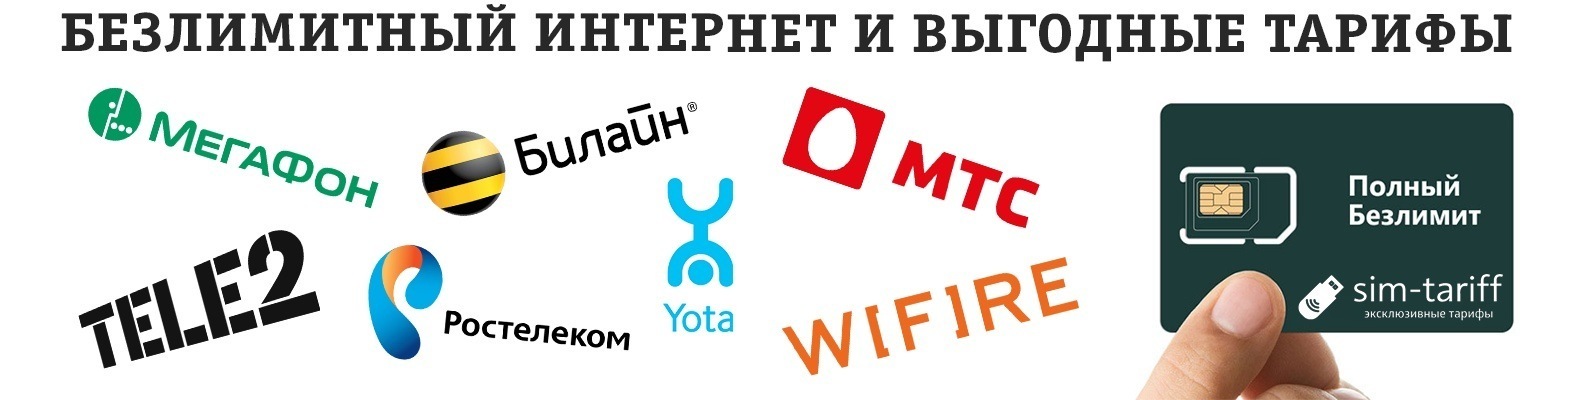 Безлимитный интернет ставропольский край